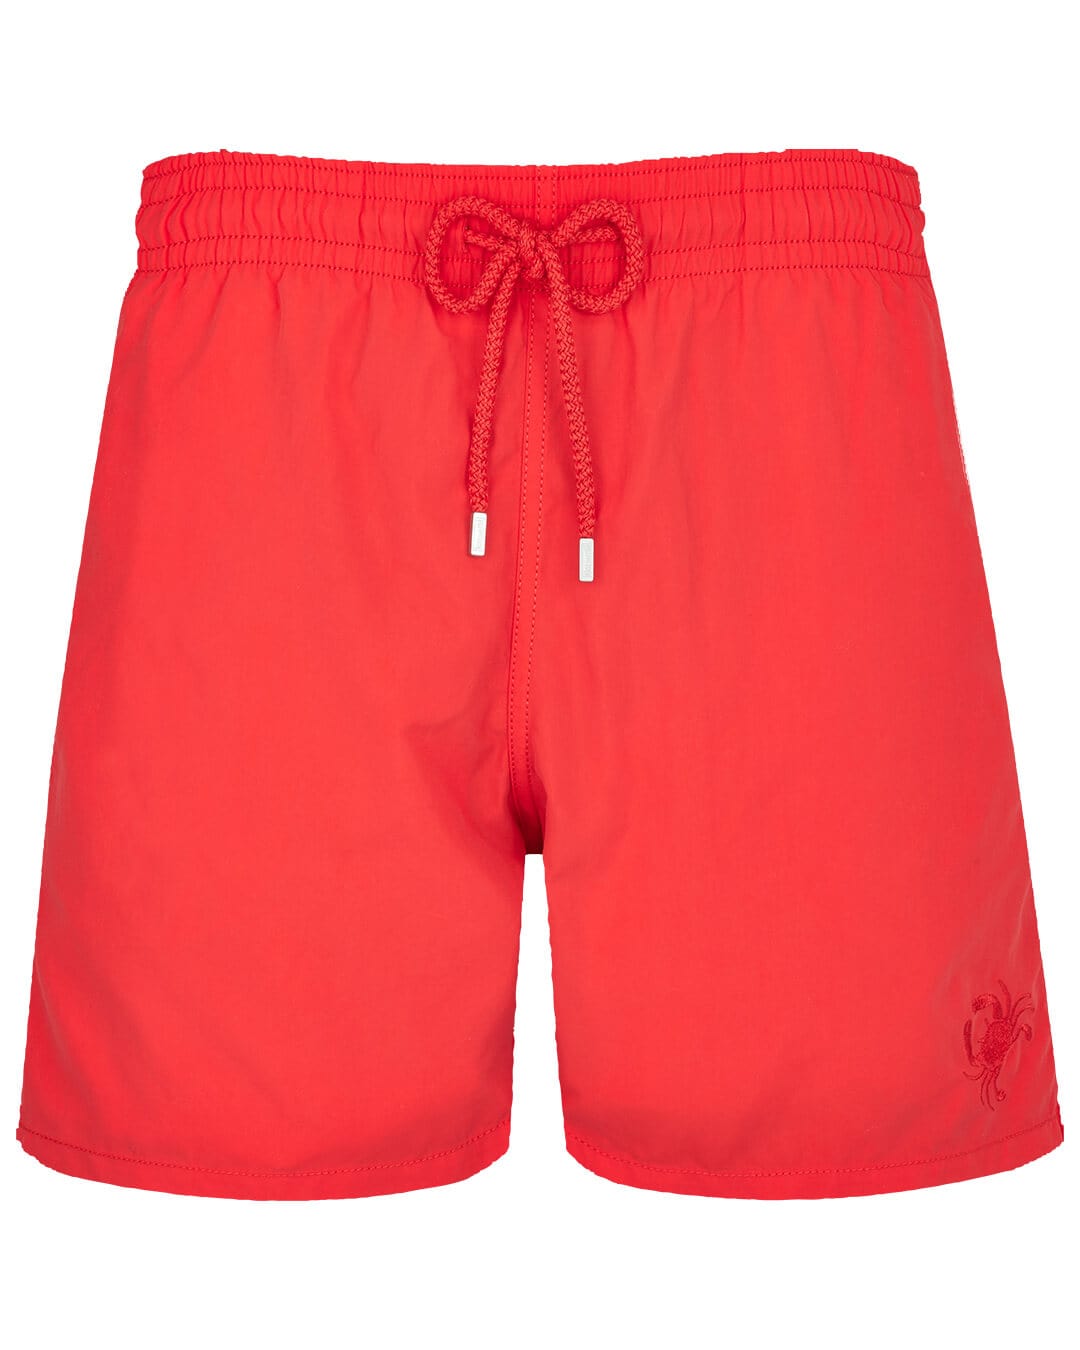 Vilebrequin Swimwear Vilebrequin Red Water Reactive Crabs Swim Shorts